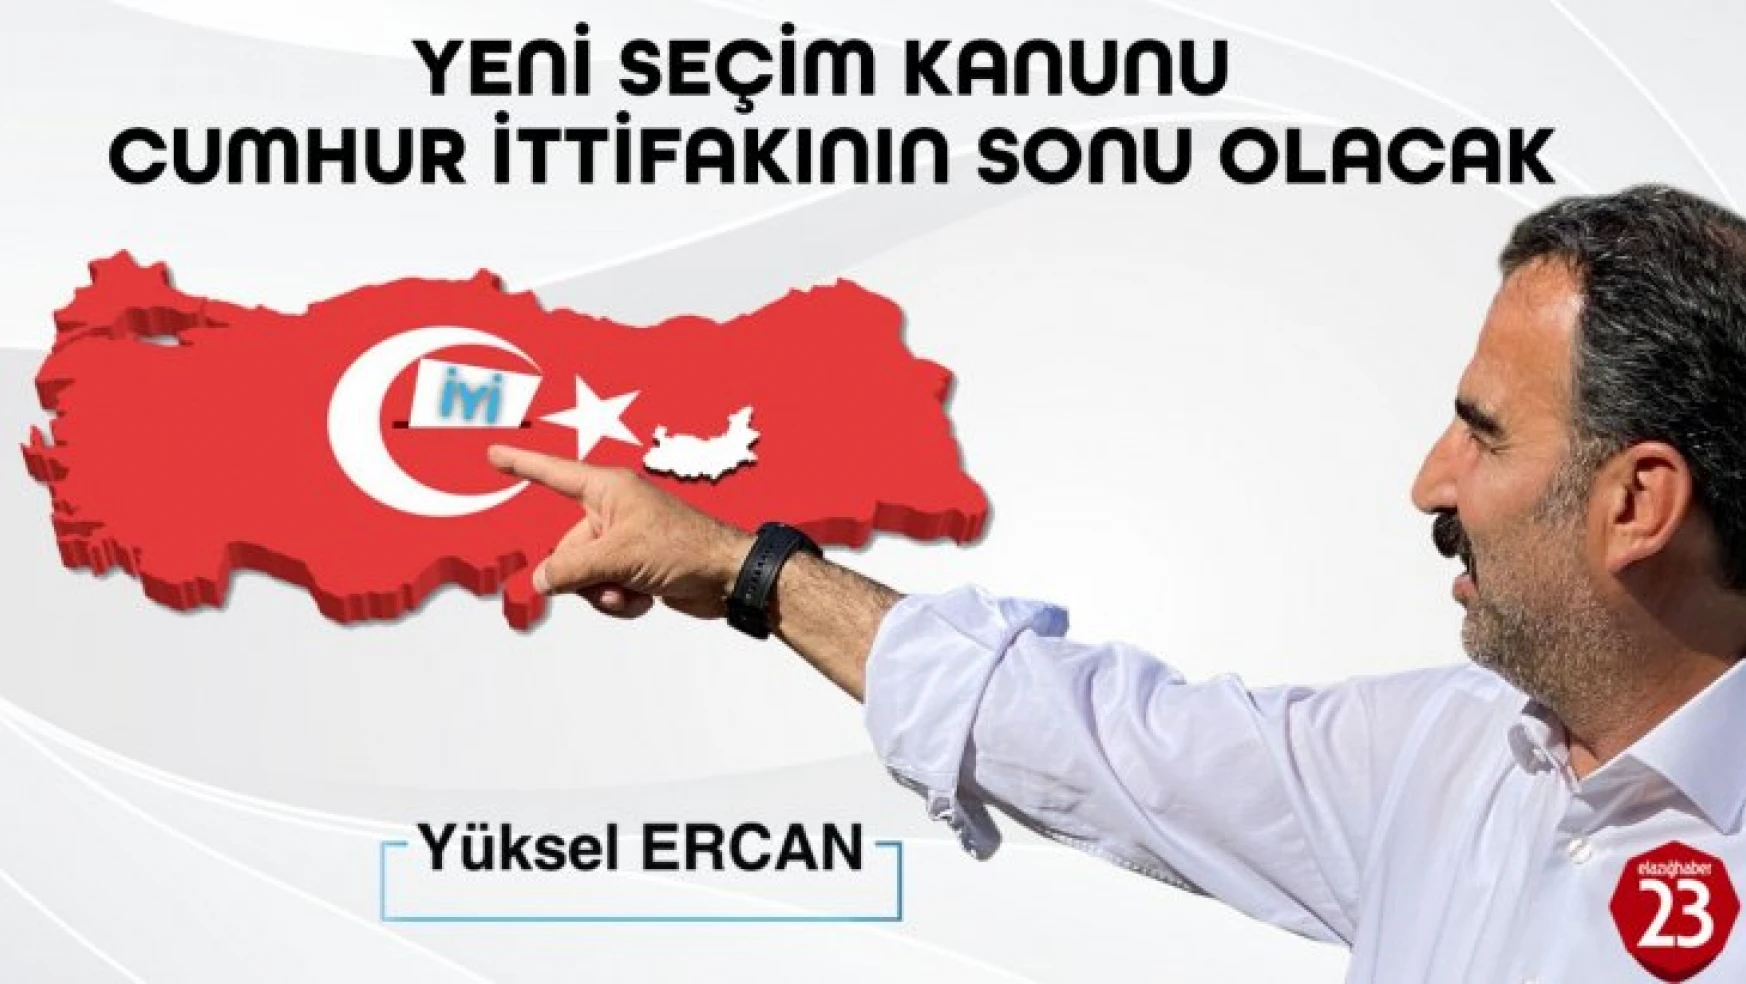 İyi Parti Milletvekili Aday Adayı Ercan, Yeni Seçim Kanunu Cumhur İttifakının Sonu Olacak